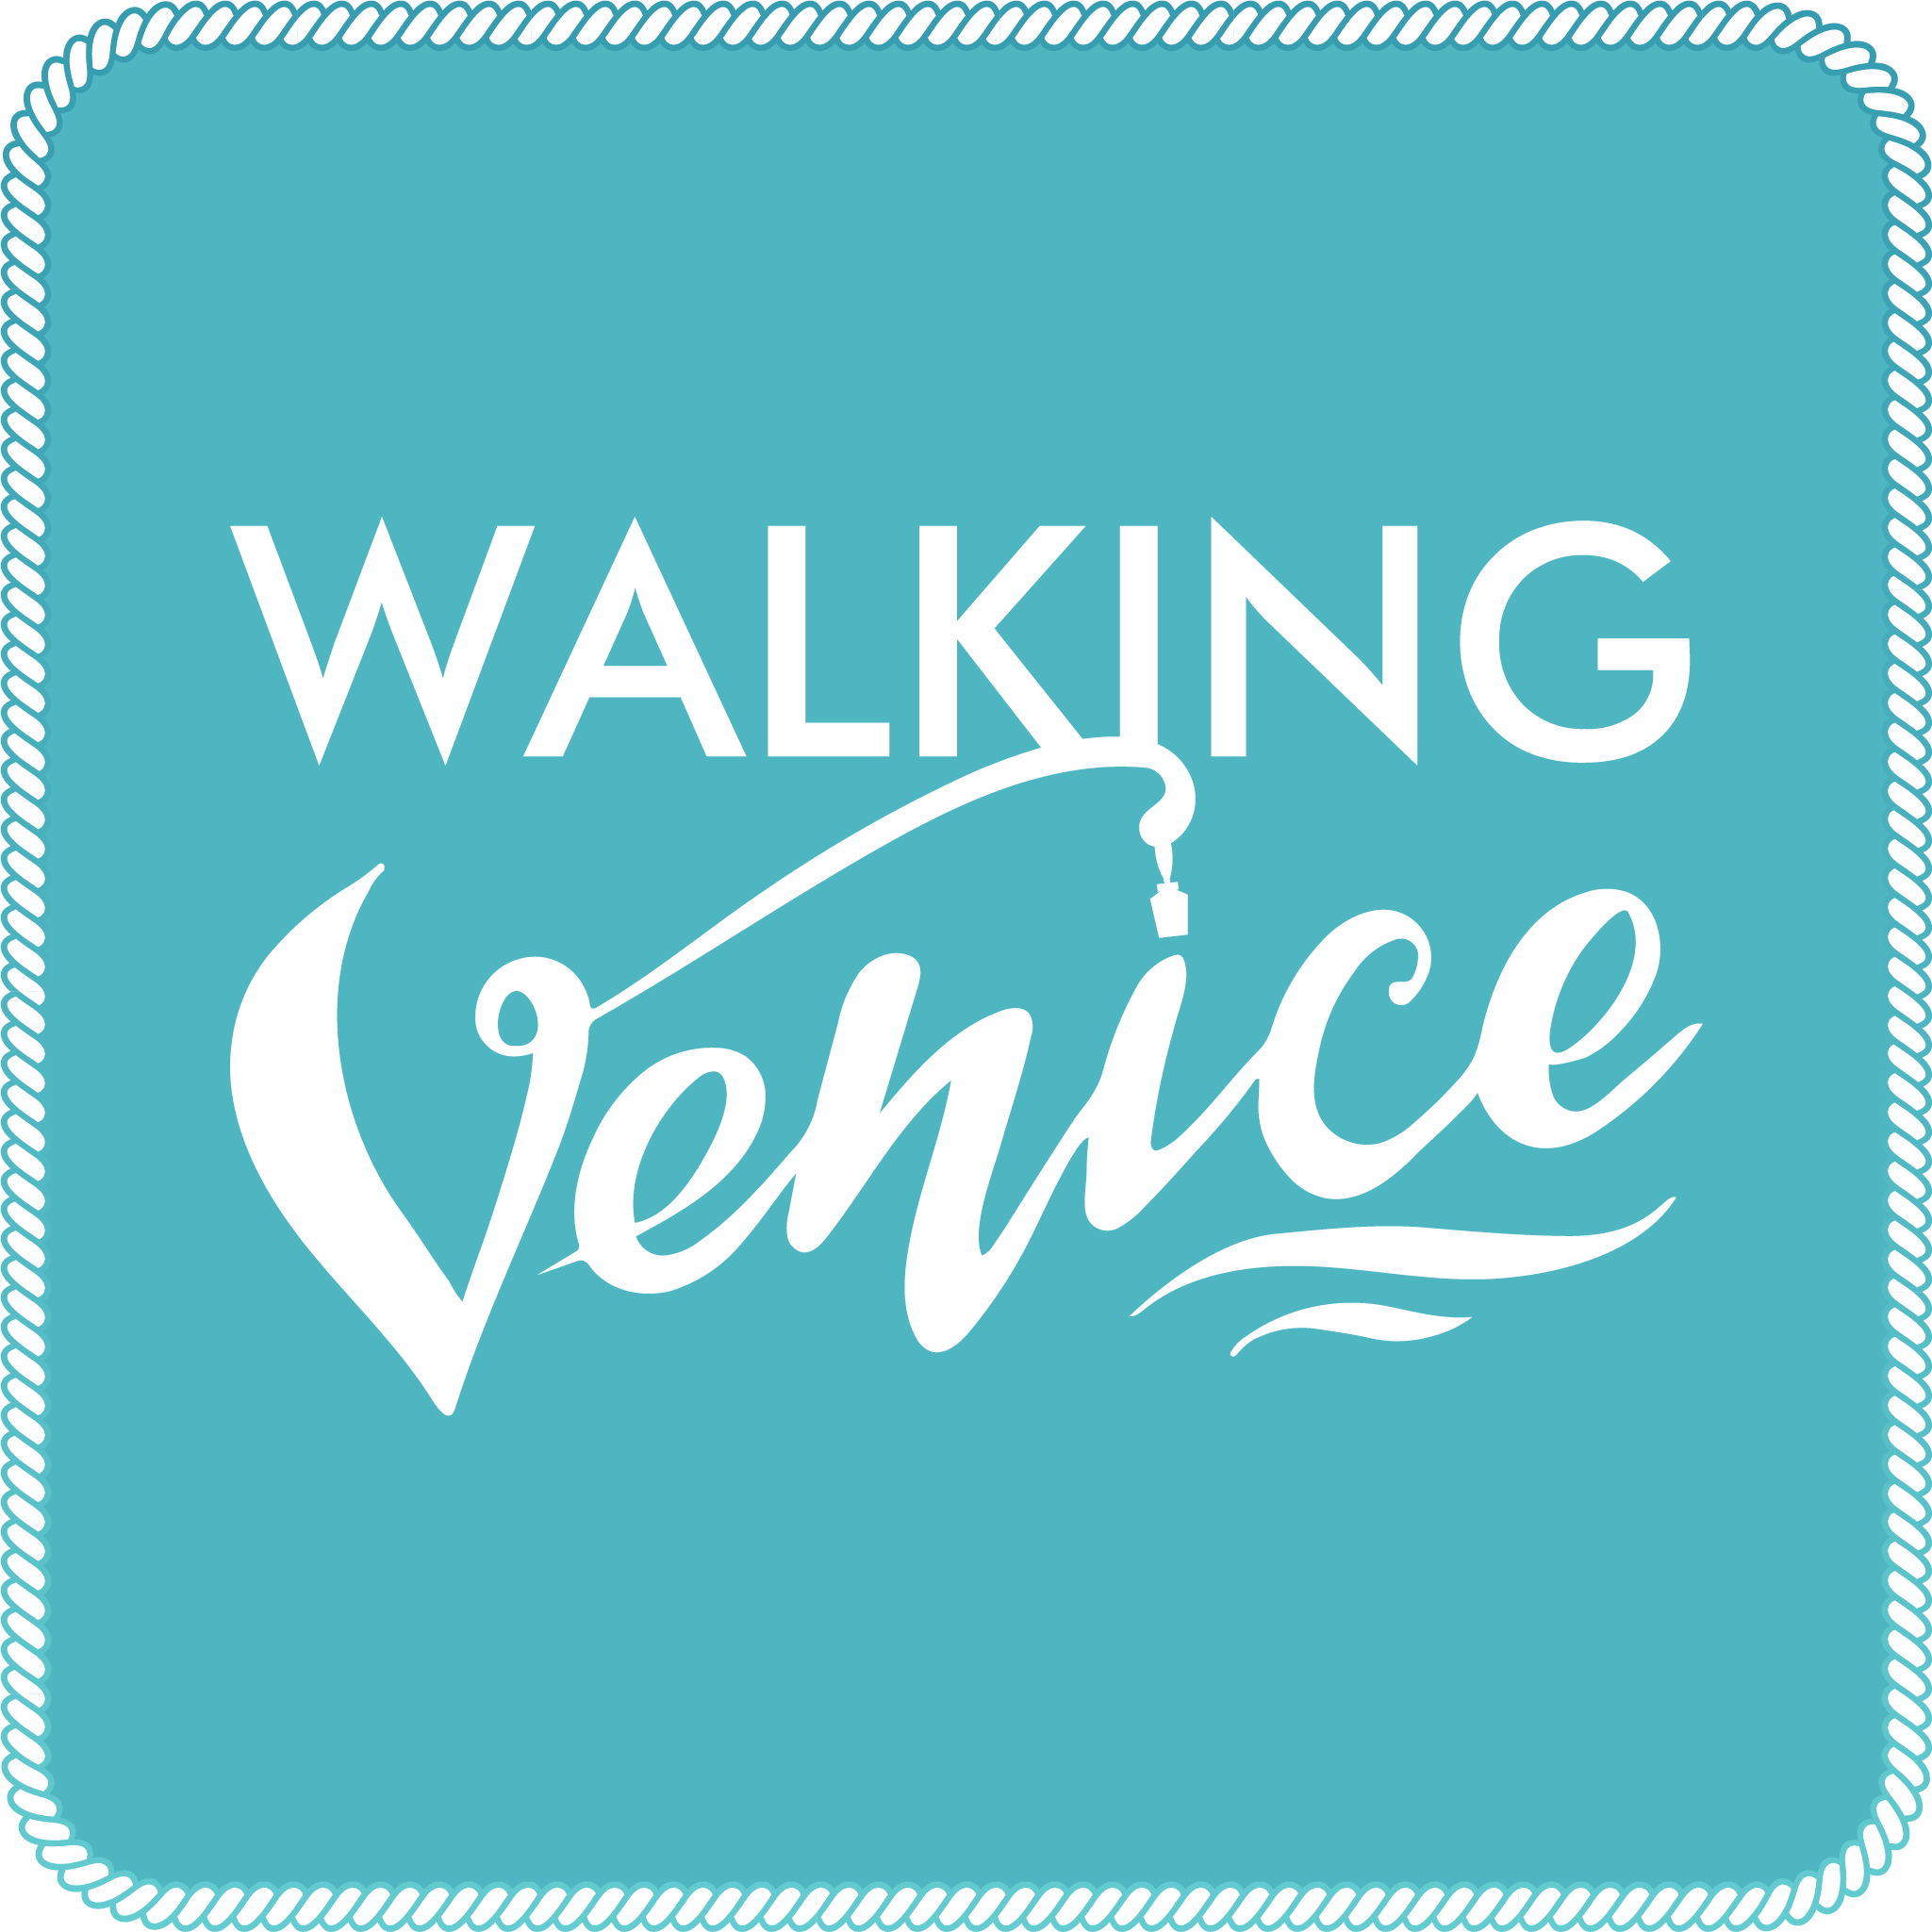 Walking Venice